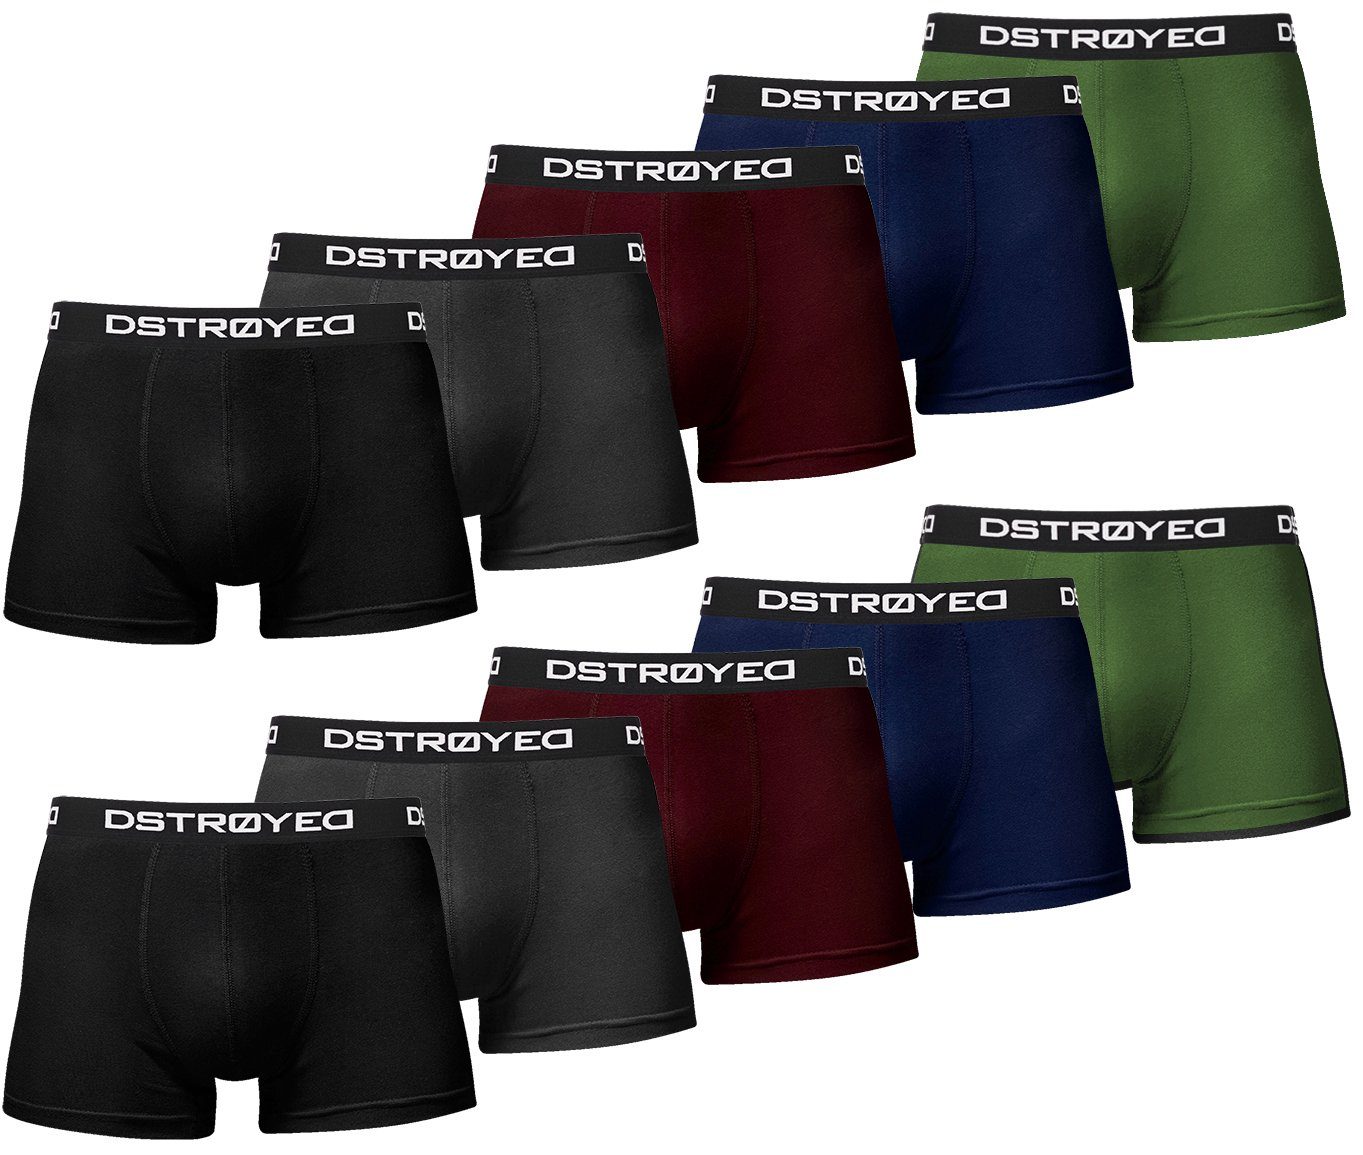 DSTROYED Boxershorts Herren Männer Unterhosen Baumwolle Premium Qualität  perfekte Passform (Vorteilspack, 10er Pack) S - 5XL, MEHRPACK: Zehn  hochwertige Boxershorts in klassischem 'All Black' und Unifarben